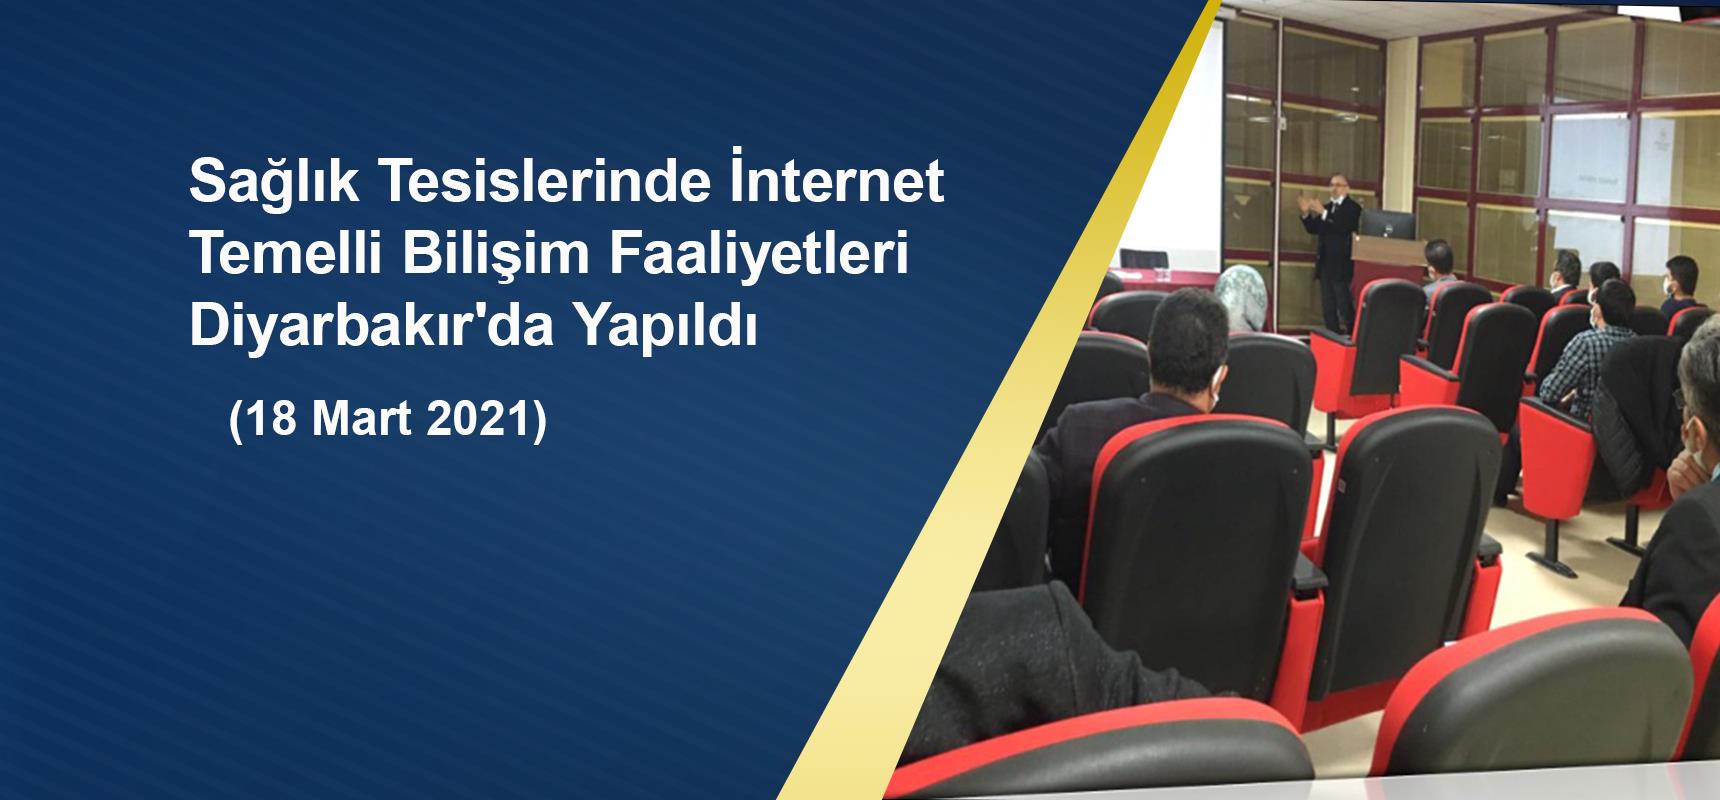 Sağlık Tesislerinde İnternet  Temelli Bilişim Faaliyetleri Diyarbakır'da Yapıldı